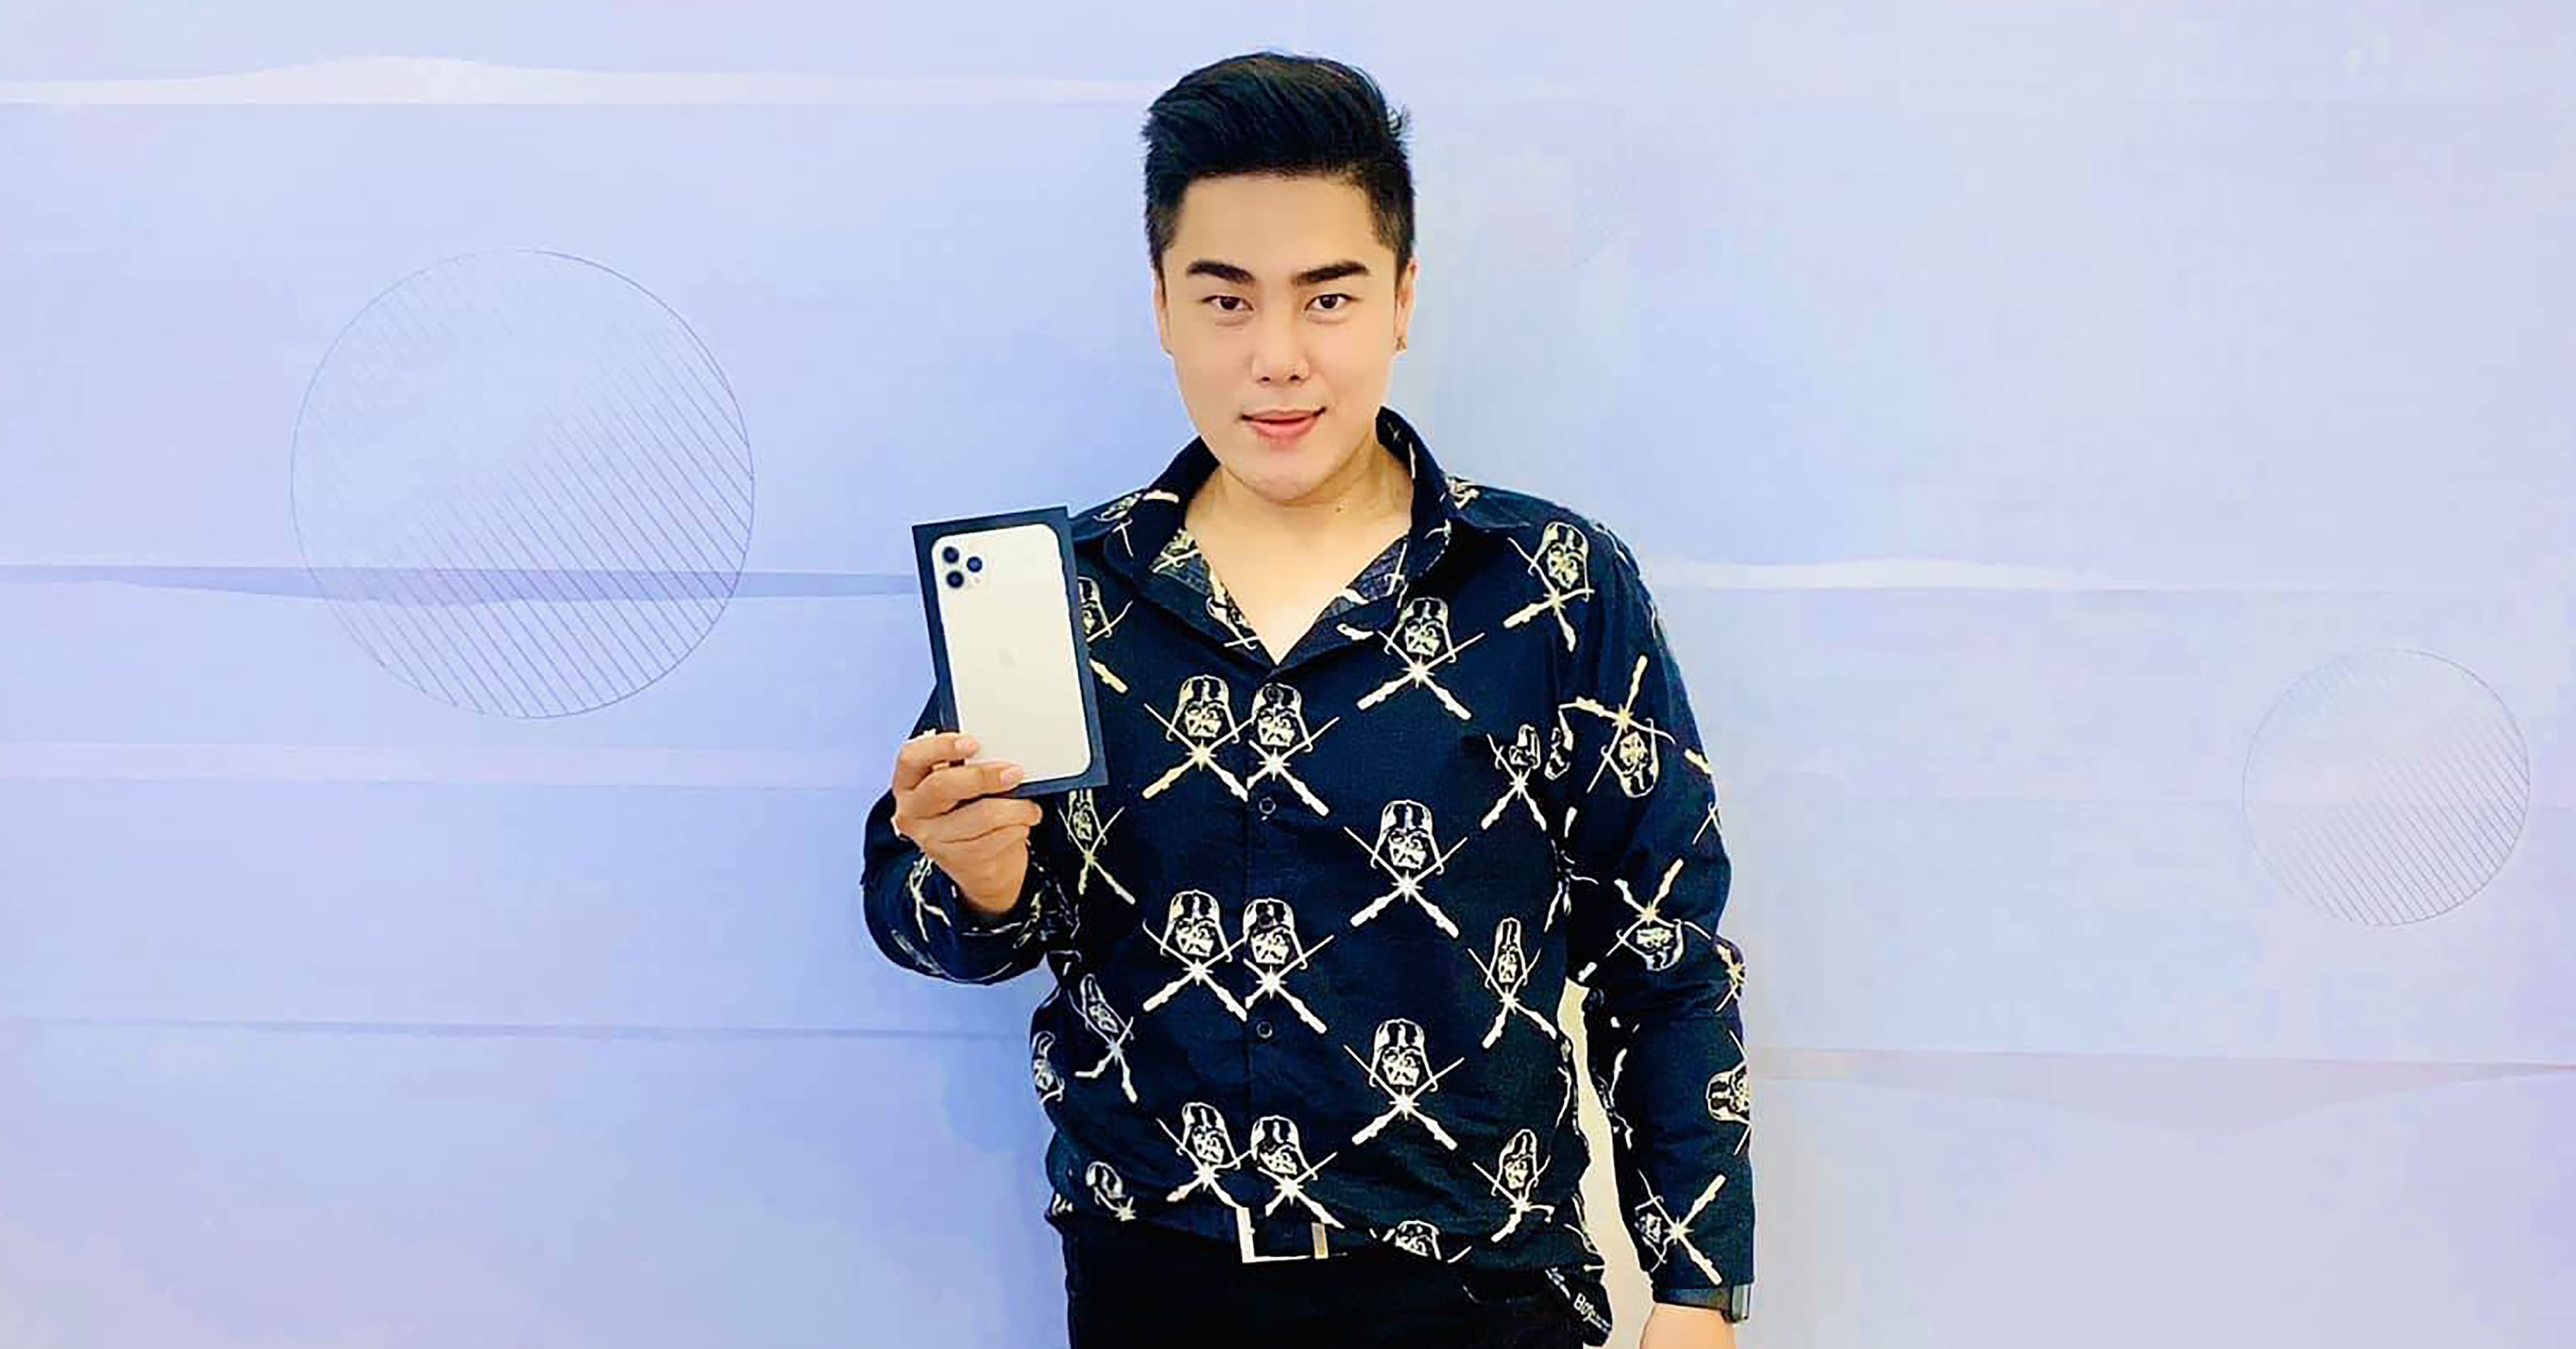 Ca sĩ Nguyễn Đình Vũ chọn mua iPhone 11 Pro Max tại Di Động Việt